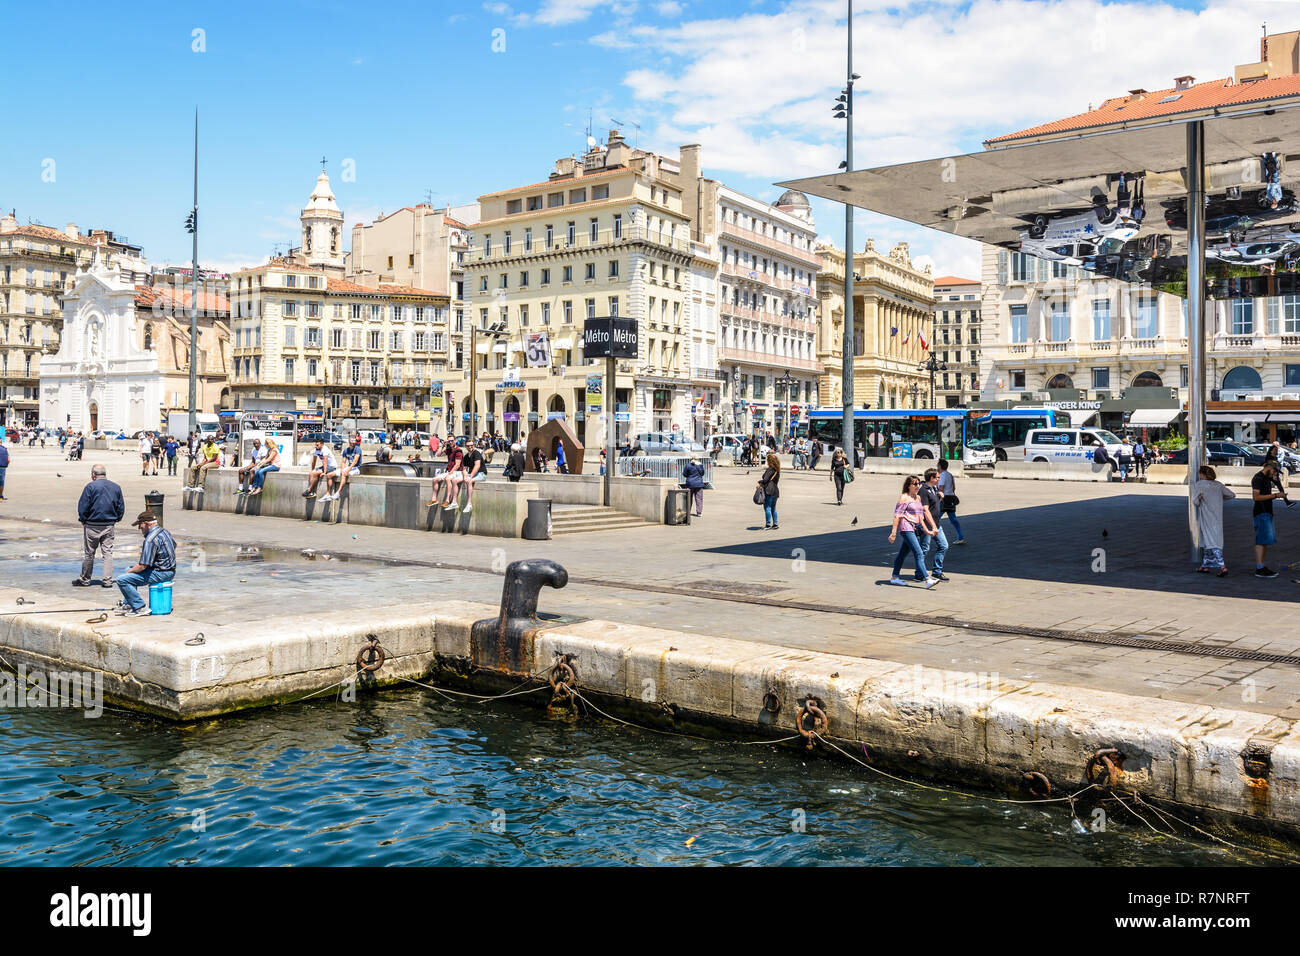 Le Quai des Belges sur le Vieux Port à Marseille, France, avec la station de métro et de l'ombriere, le parasol en miroir par Norman Foster. Banque D'Images